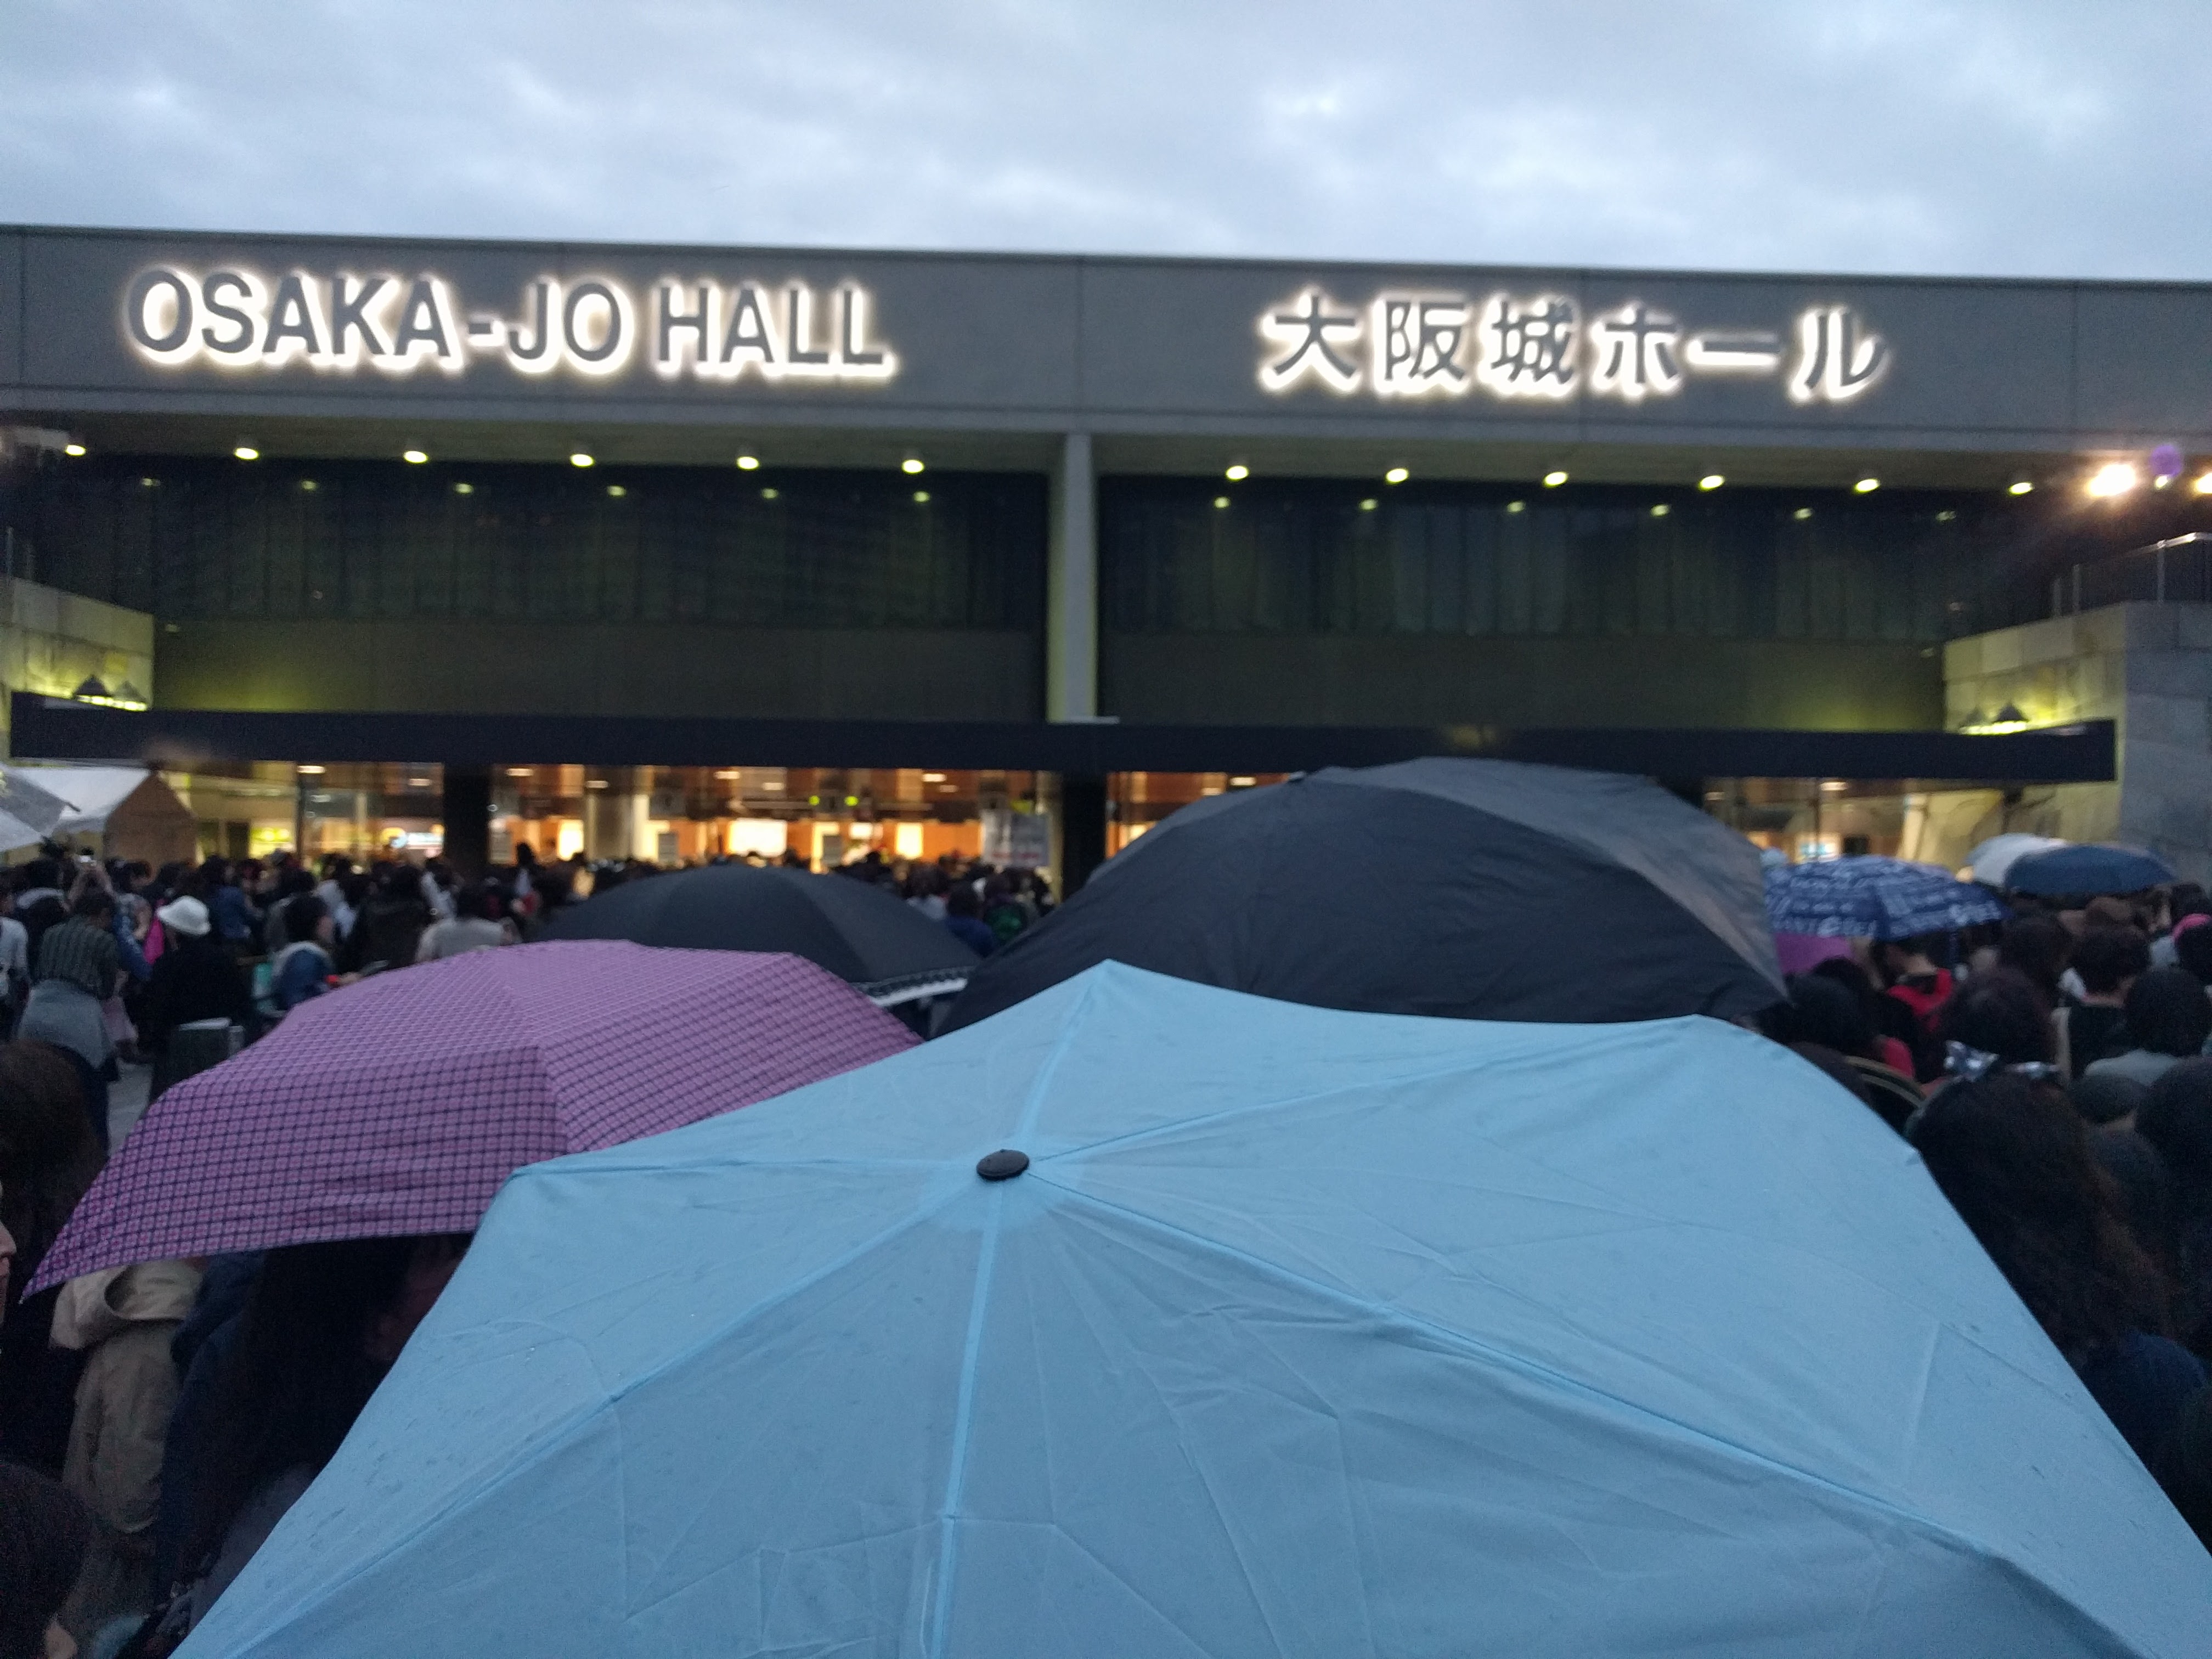 20161016-rain-god-show-at-osaka-jo-hall